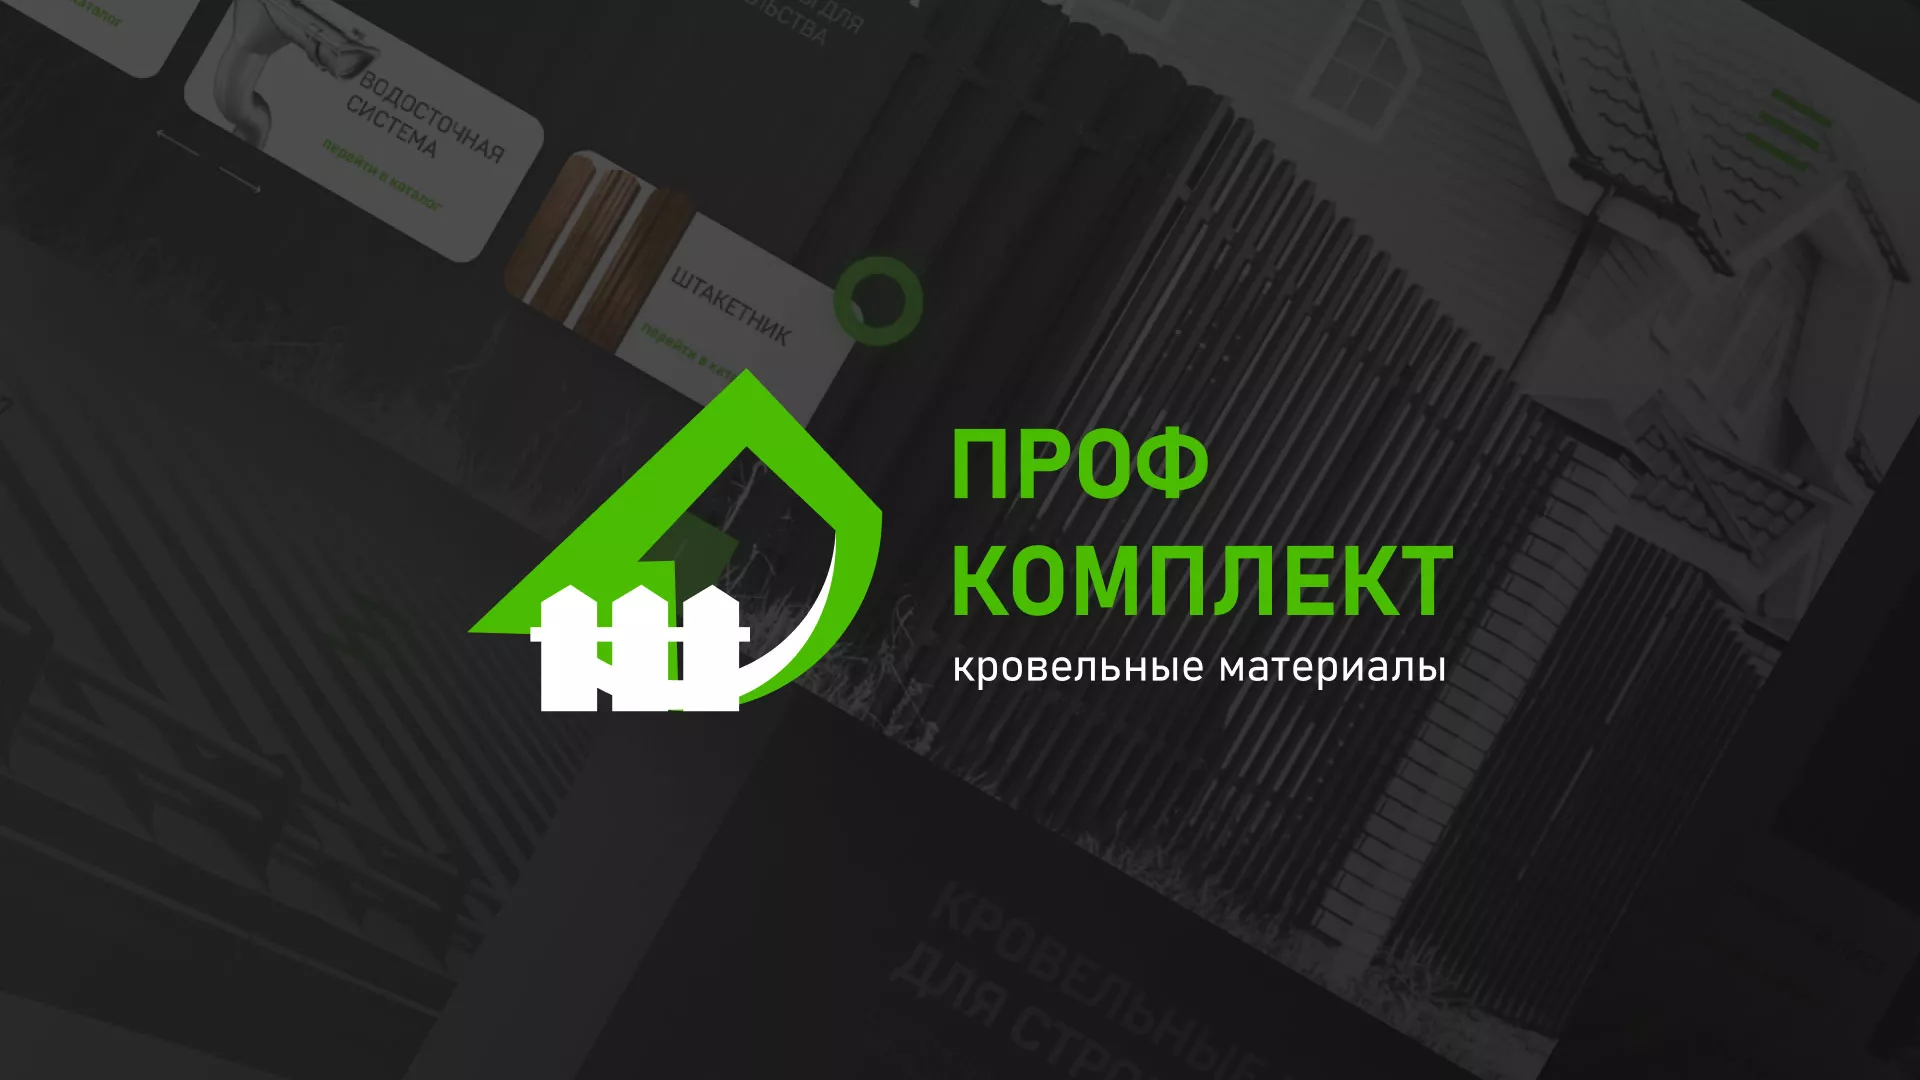 Создание сайта компании «Проф Комплект» в Заполярном